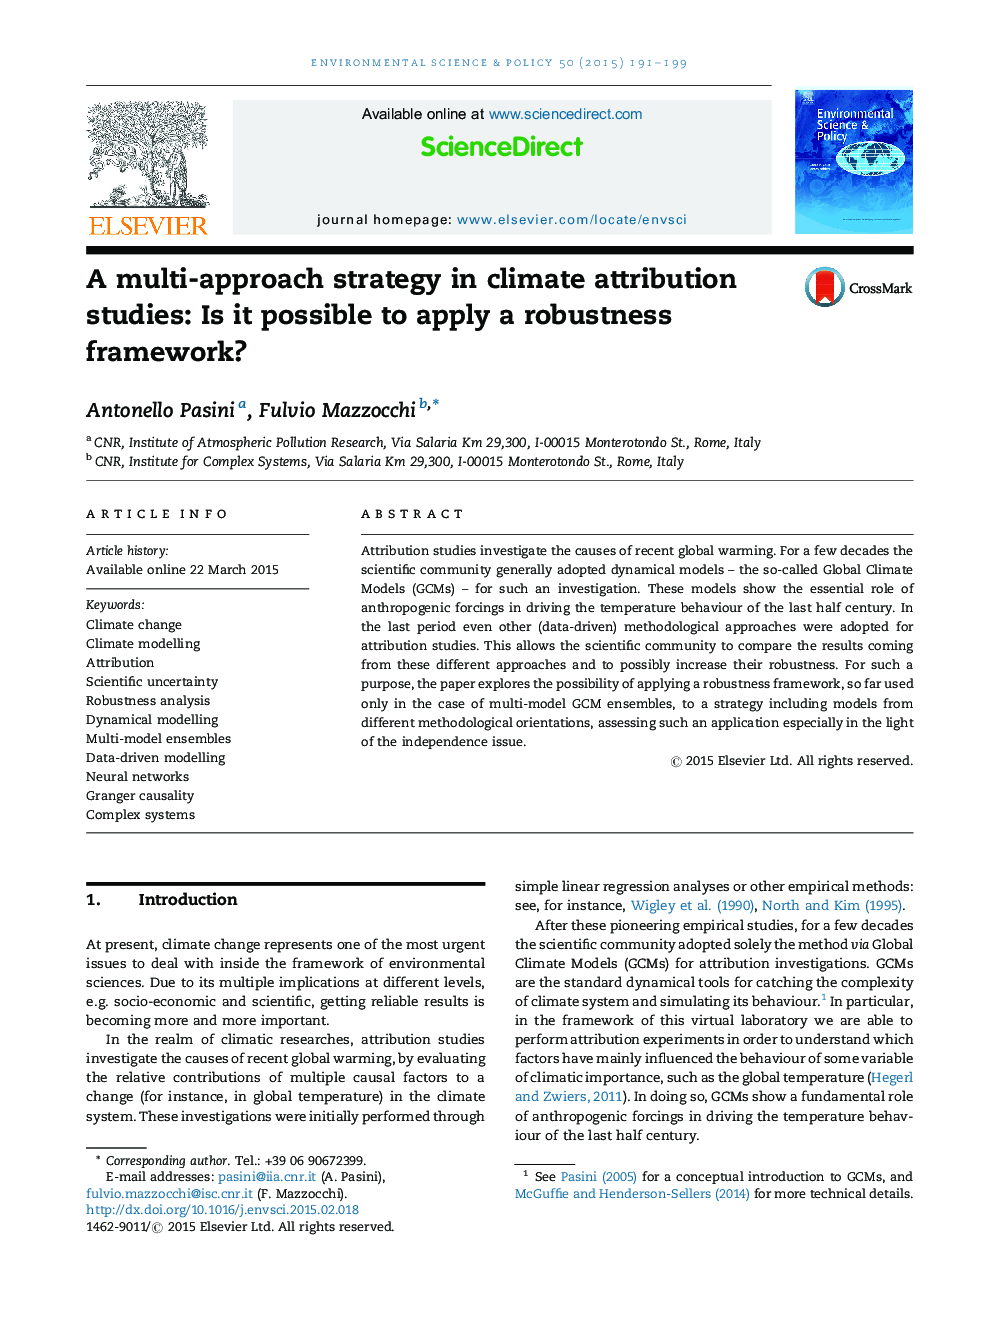 یک استراتژی چند گانه در مطالعات مربوط به شناسایی شرایط آب و هوایی: آیا می توان چارچوب قدرتمندی را اعمال کرد؟ 